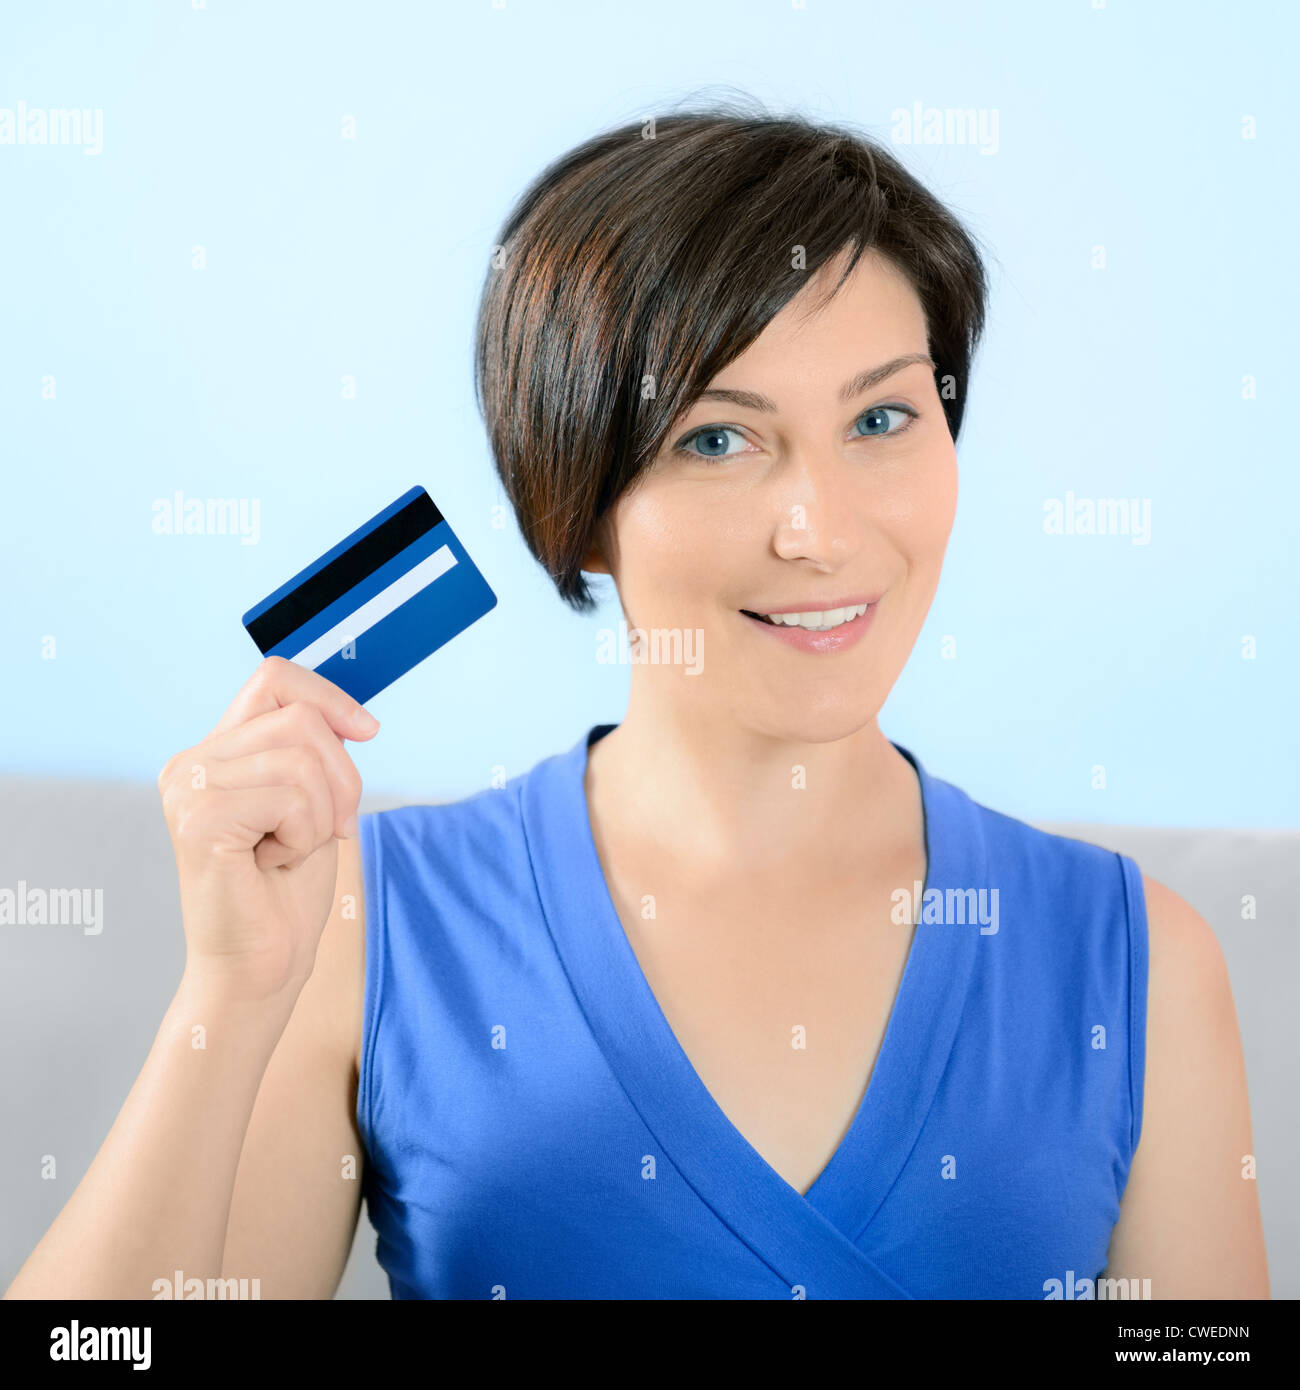 Hübsche junge Frau mit Lächeln auf dem Gesicht zeigt Kreditkarte. Stockfoto